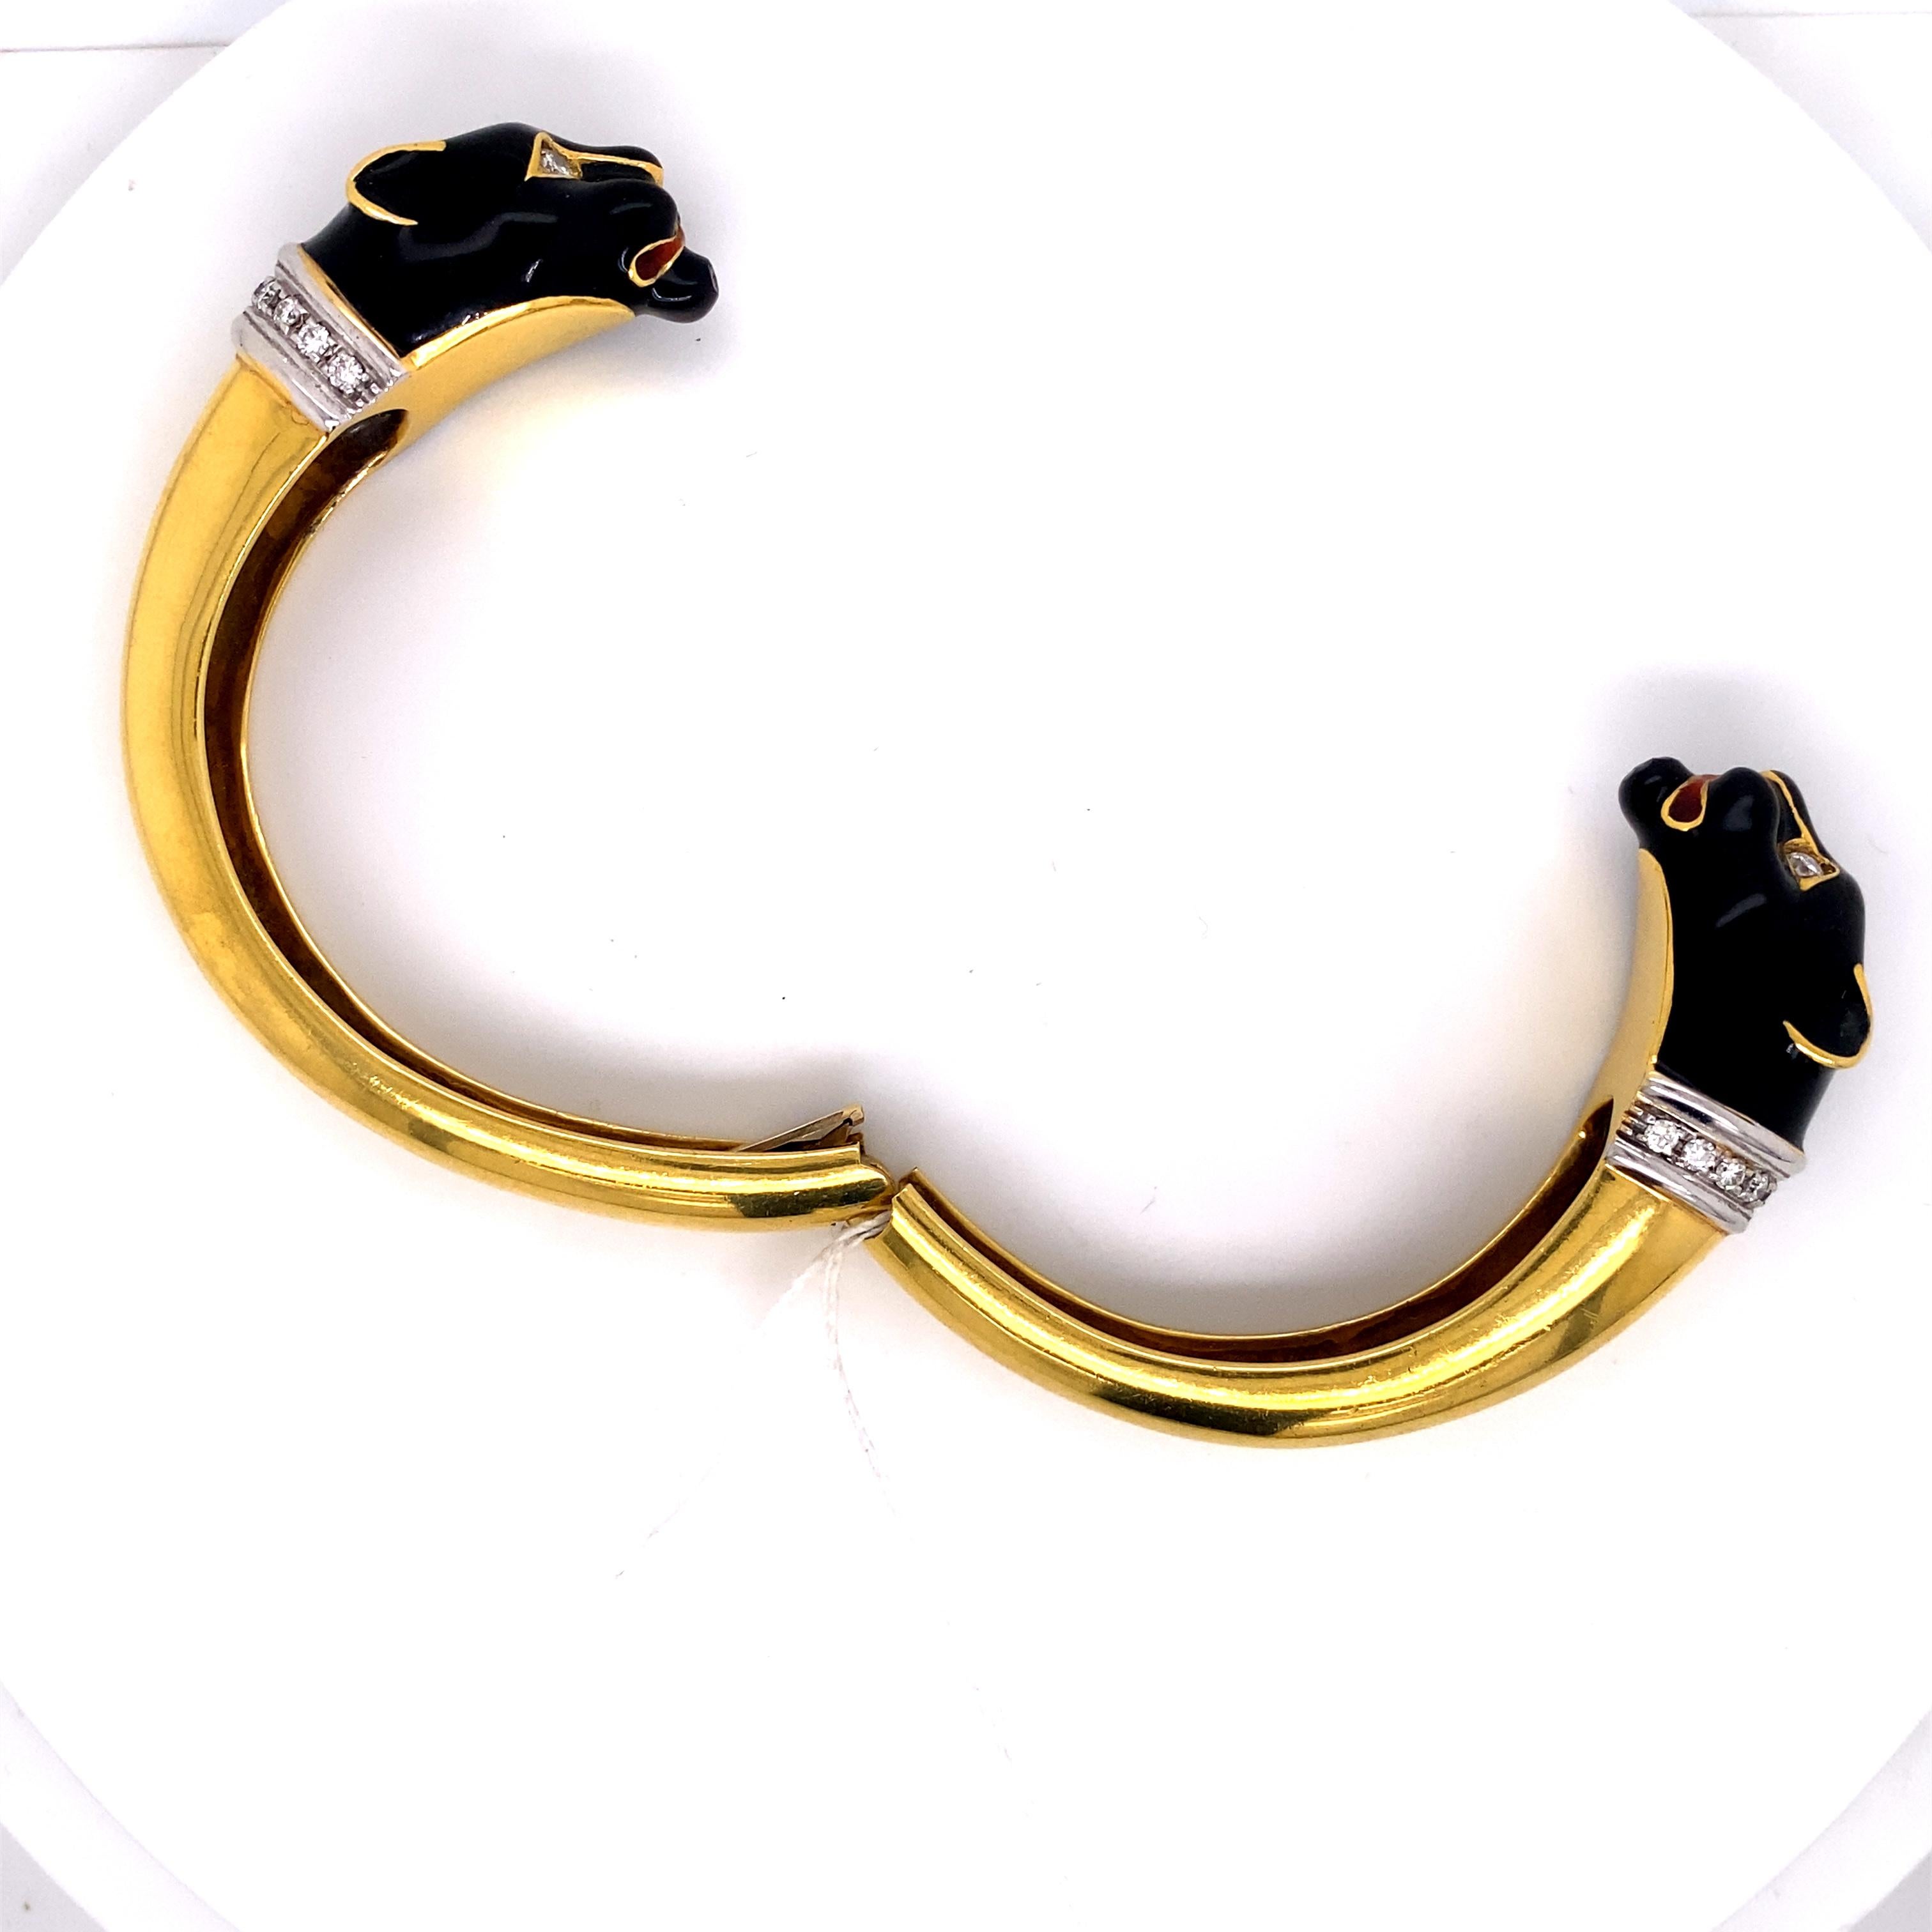 Bracelet manchette Panthère en or avec émail noir et diamants

L'exquis bracelet manchette Panthère en or jaune 18K a été fabriqué à la main dans les années 1970. Les détails  des panthères émaillées noires et des accents de diamants pavés créent un